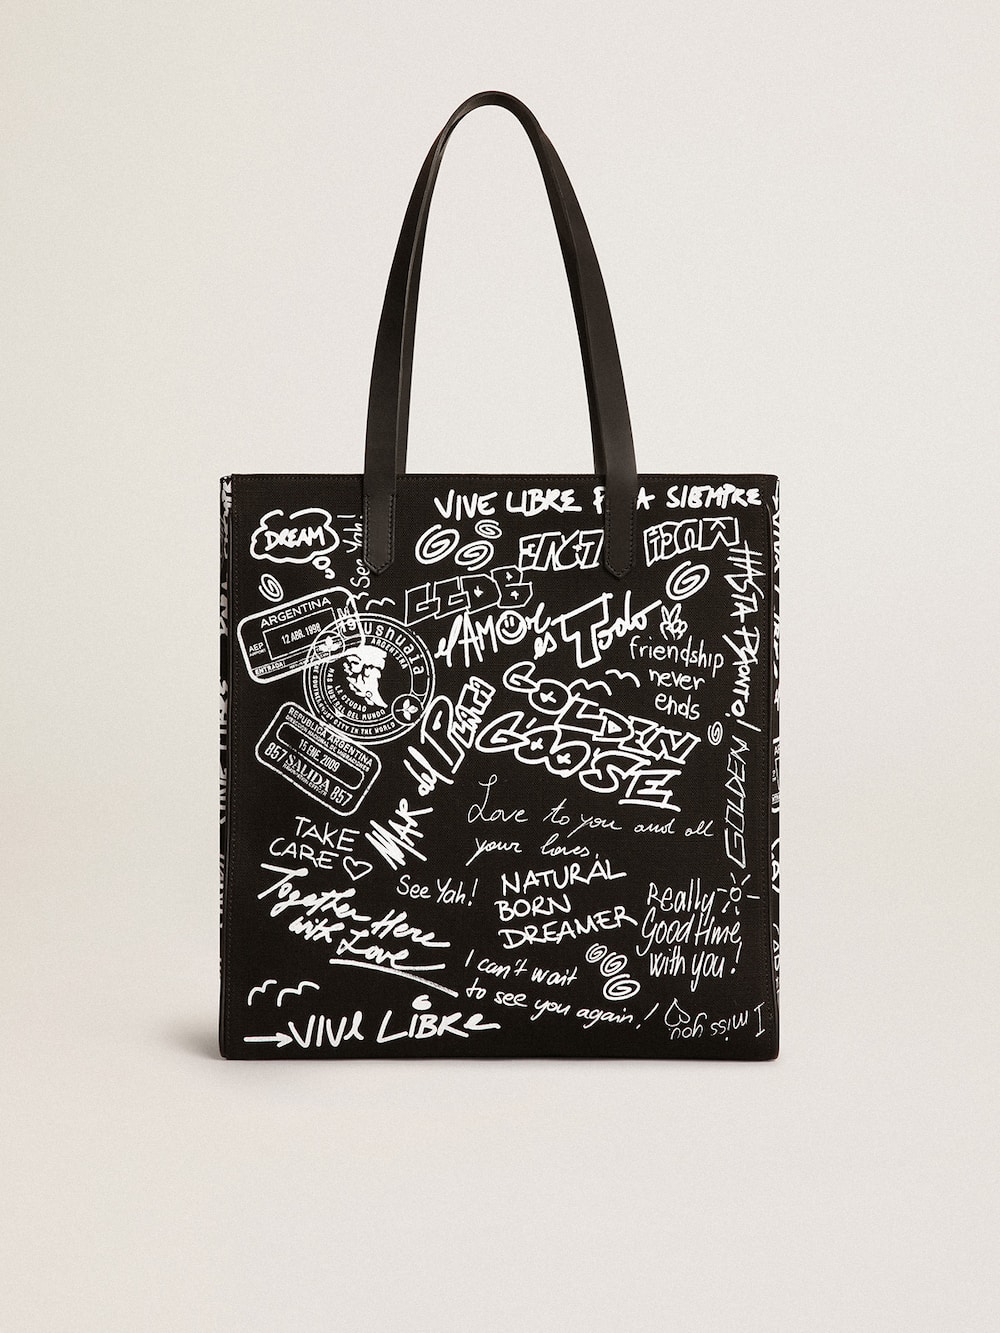 Golden Goose - Bolso California Bag North-South de color negro con estampado de grafiti blanco en contraste in 